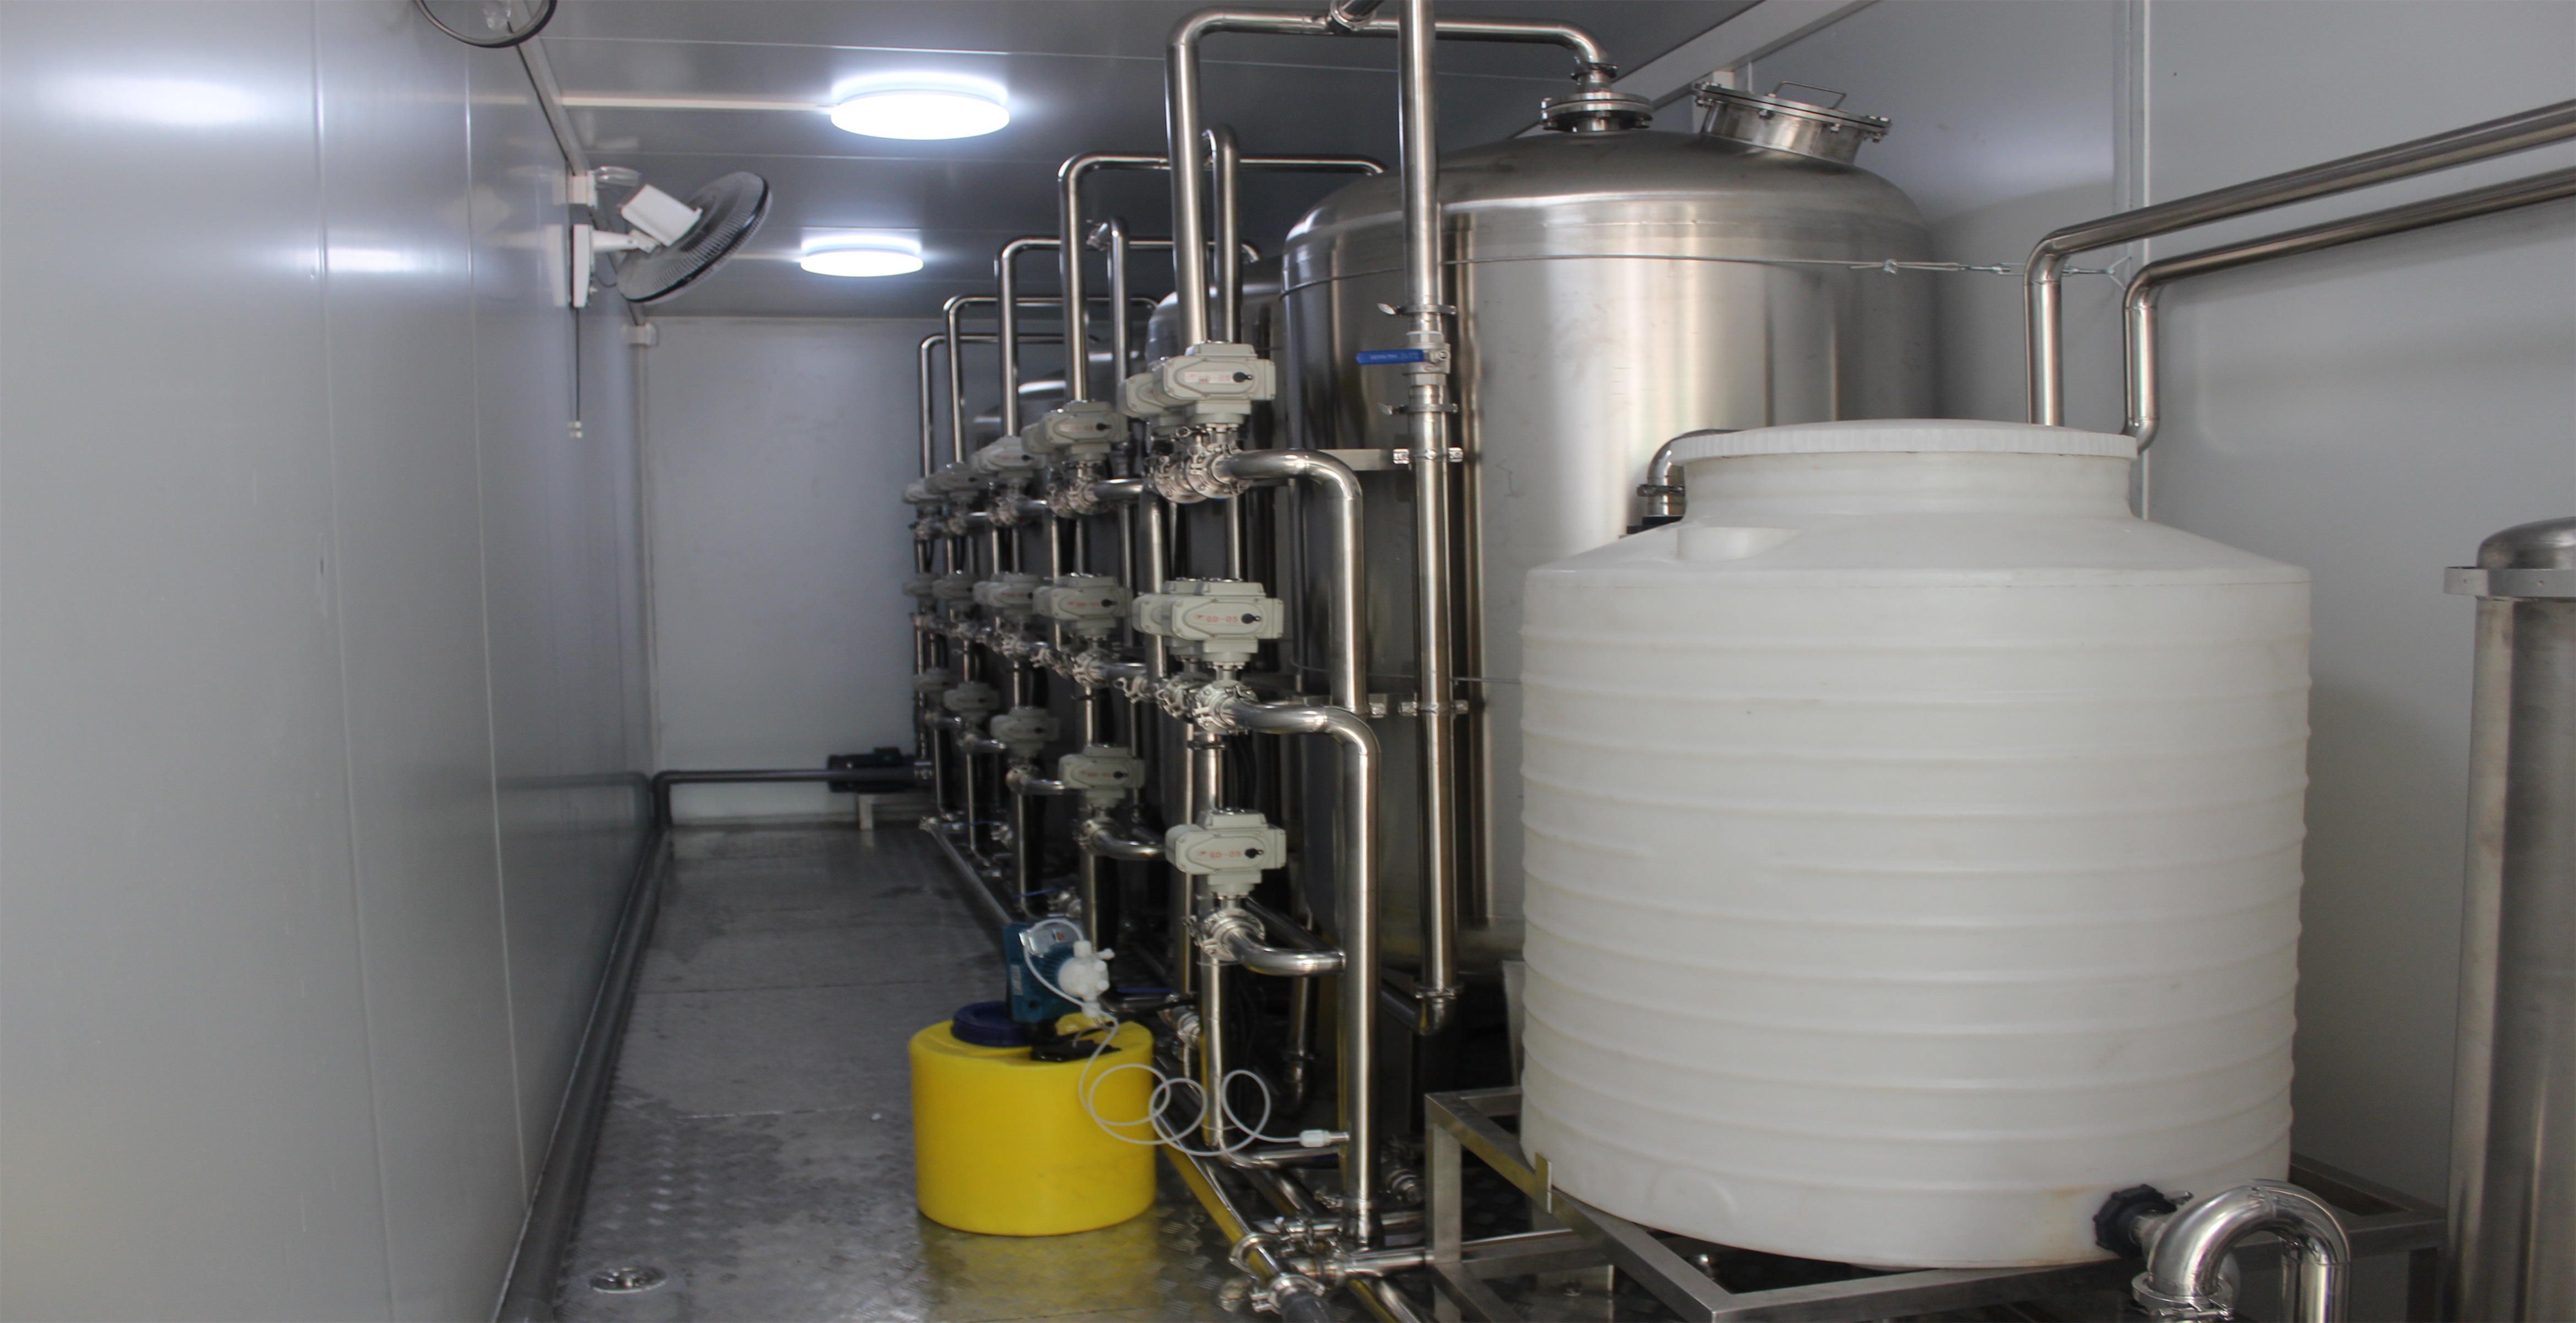 STARK teollinen konteissa ro-puhdistusjärjestelmät Kontetisoitu kemiallinen vesi käänteisosmoosijärjestelmä